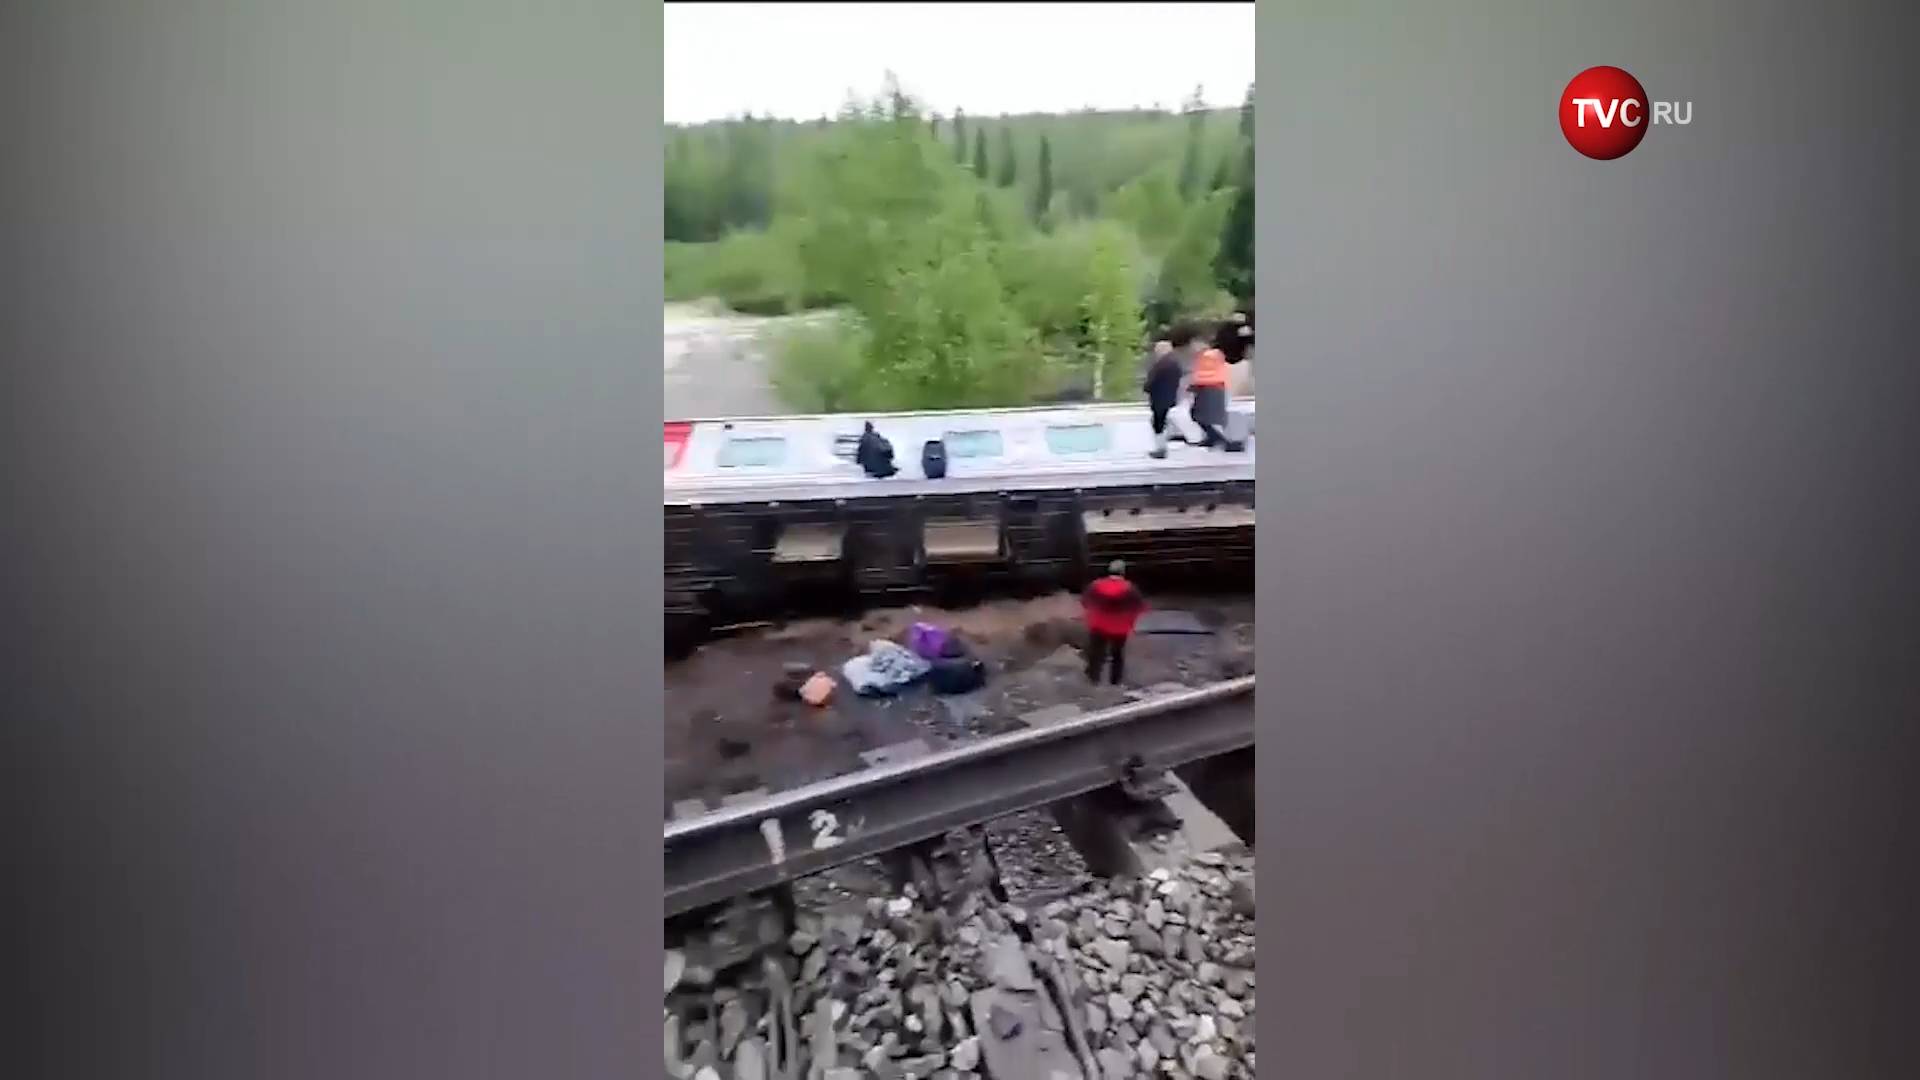 Крушение пассажирского поезда в Коми. Что известно на данный момент / События на ТВЦ